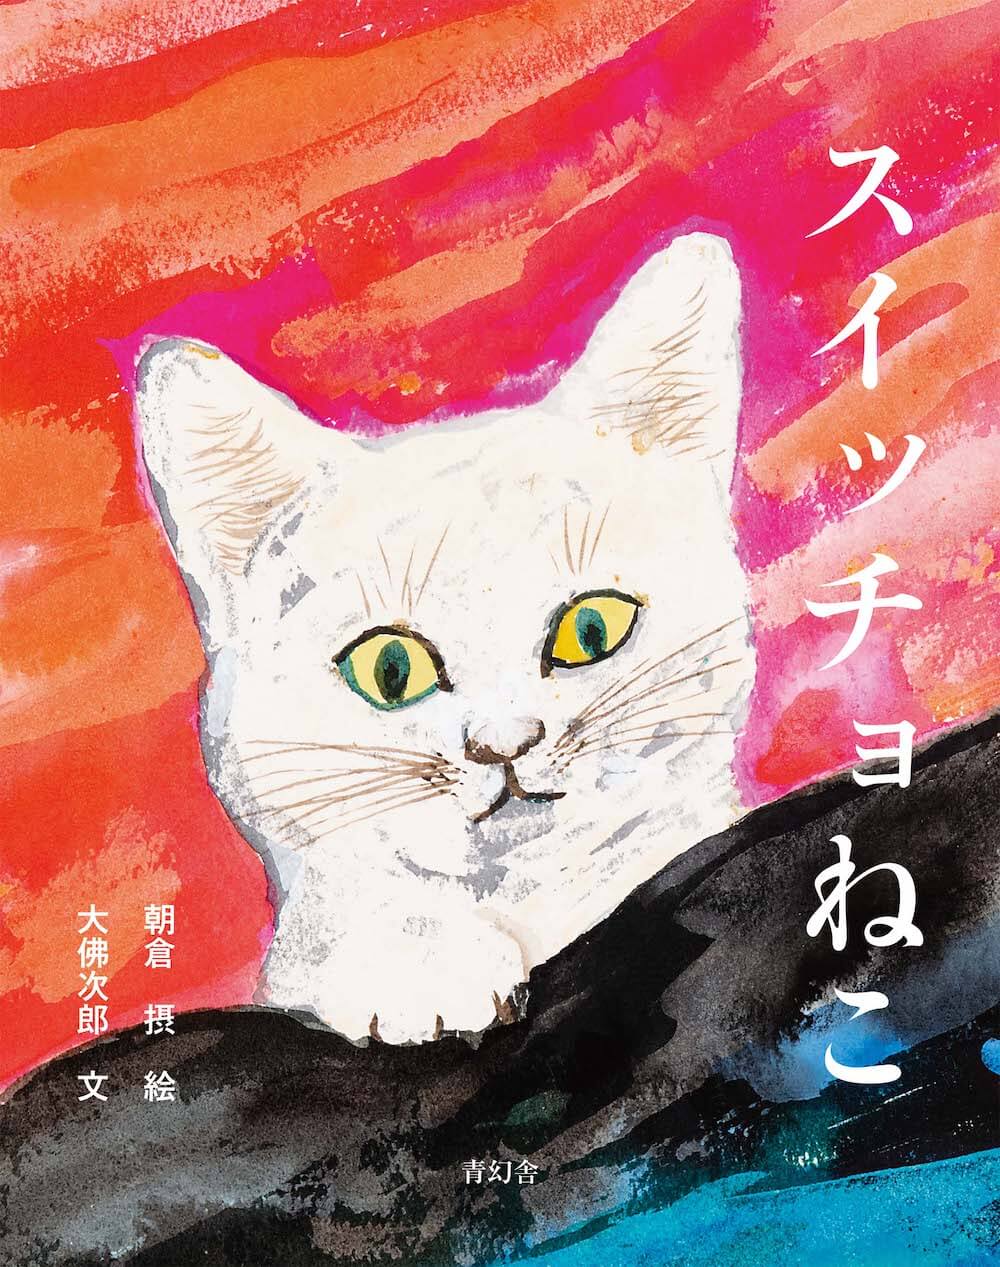 虫を飲み込んだネコのおはなし、名作絵本『スイッチョ猫』の新装版が登場！挿絵の原画パネル展も開催 Cat Press